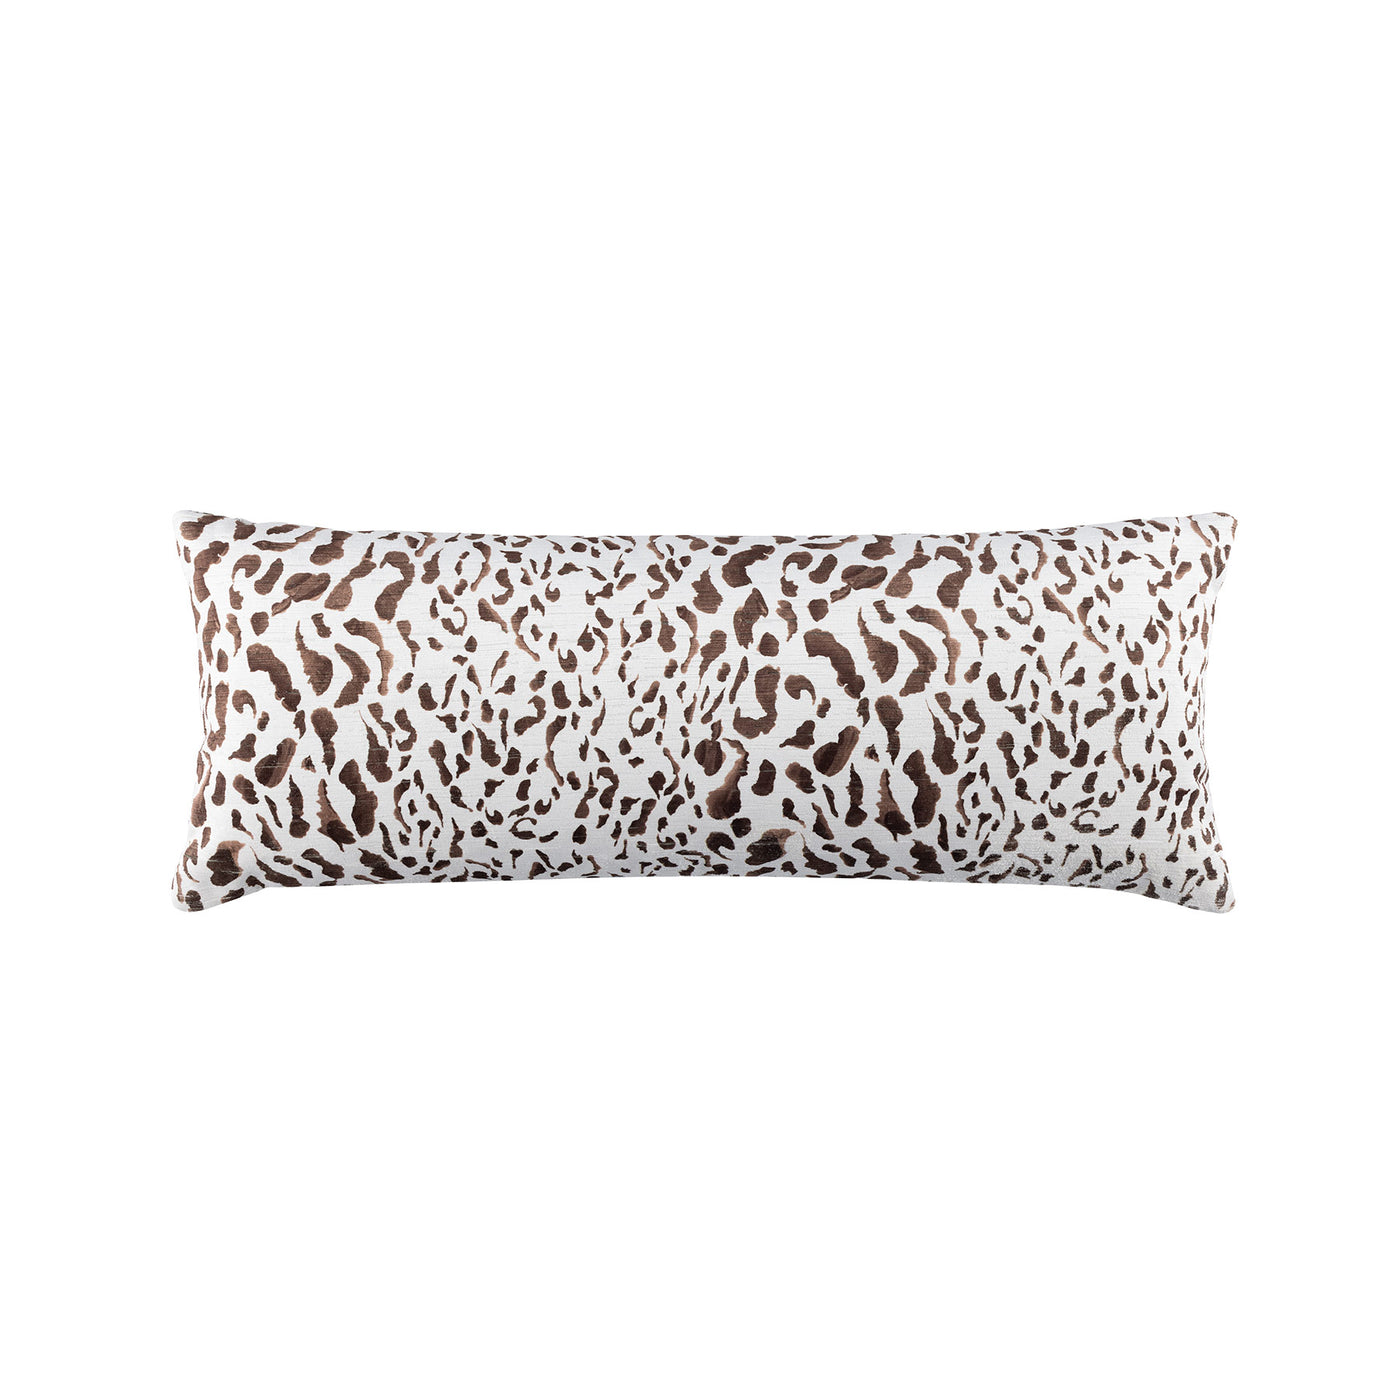 Spectrum Safari Java Long Rectangle Pillow (18x46)